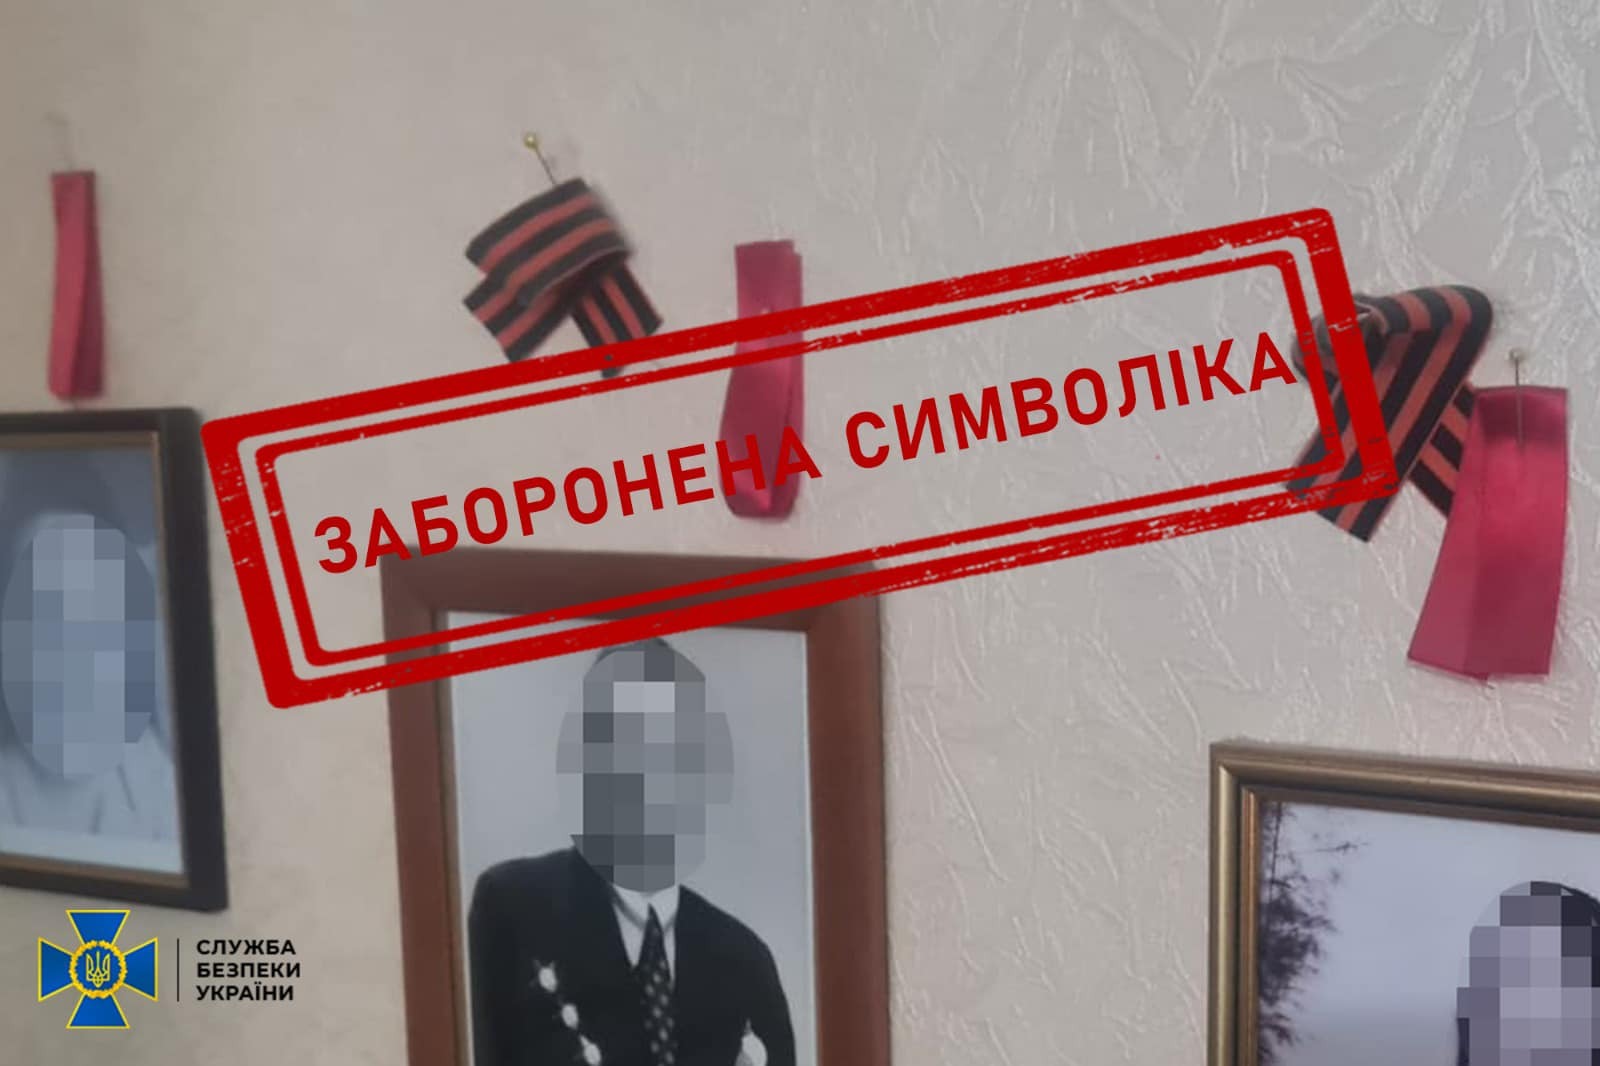 На Львівщині викрили полковника з радянською символікою, який прославляв росію